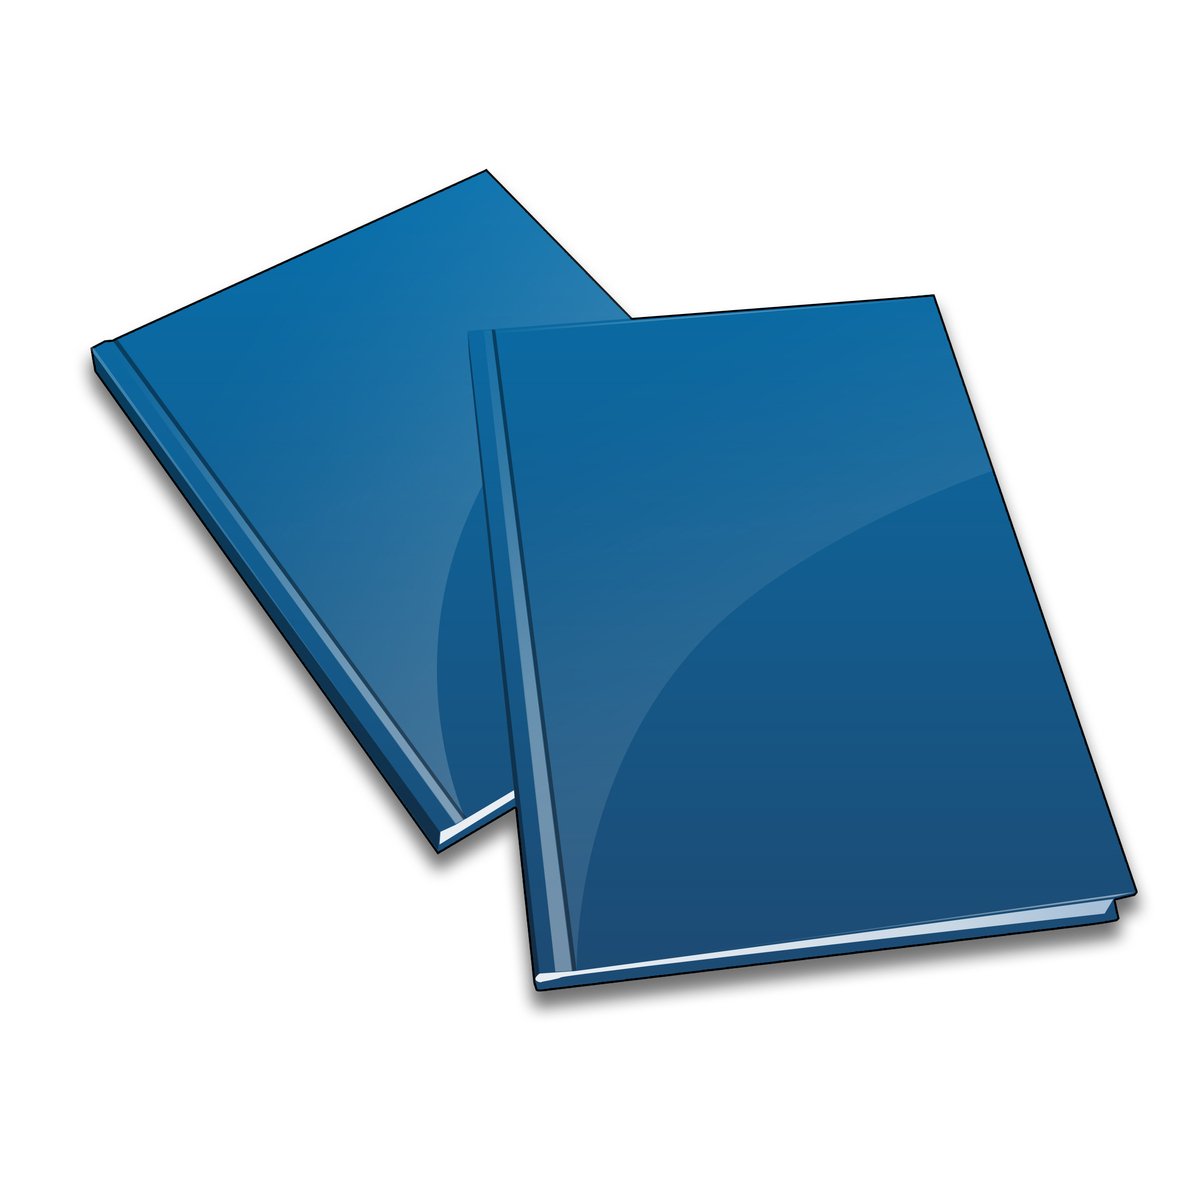 two blue folders sitting side by side